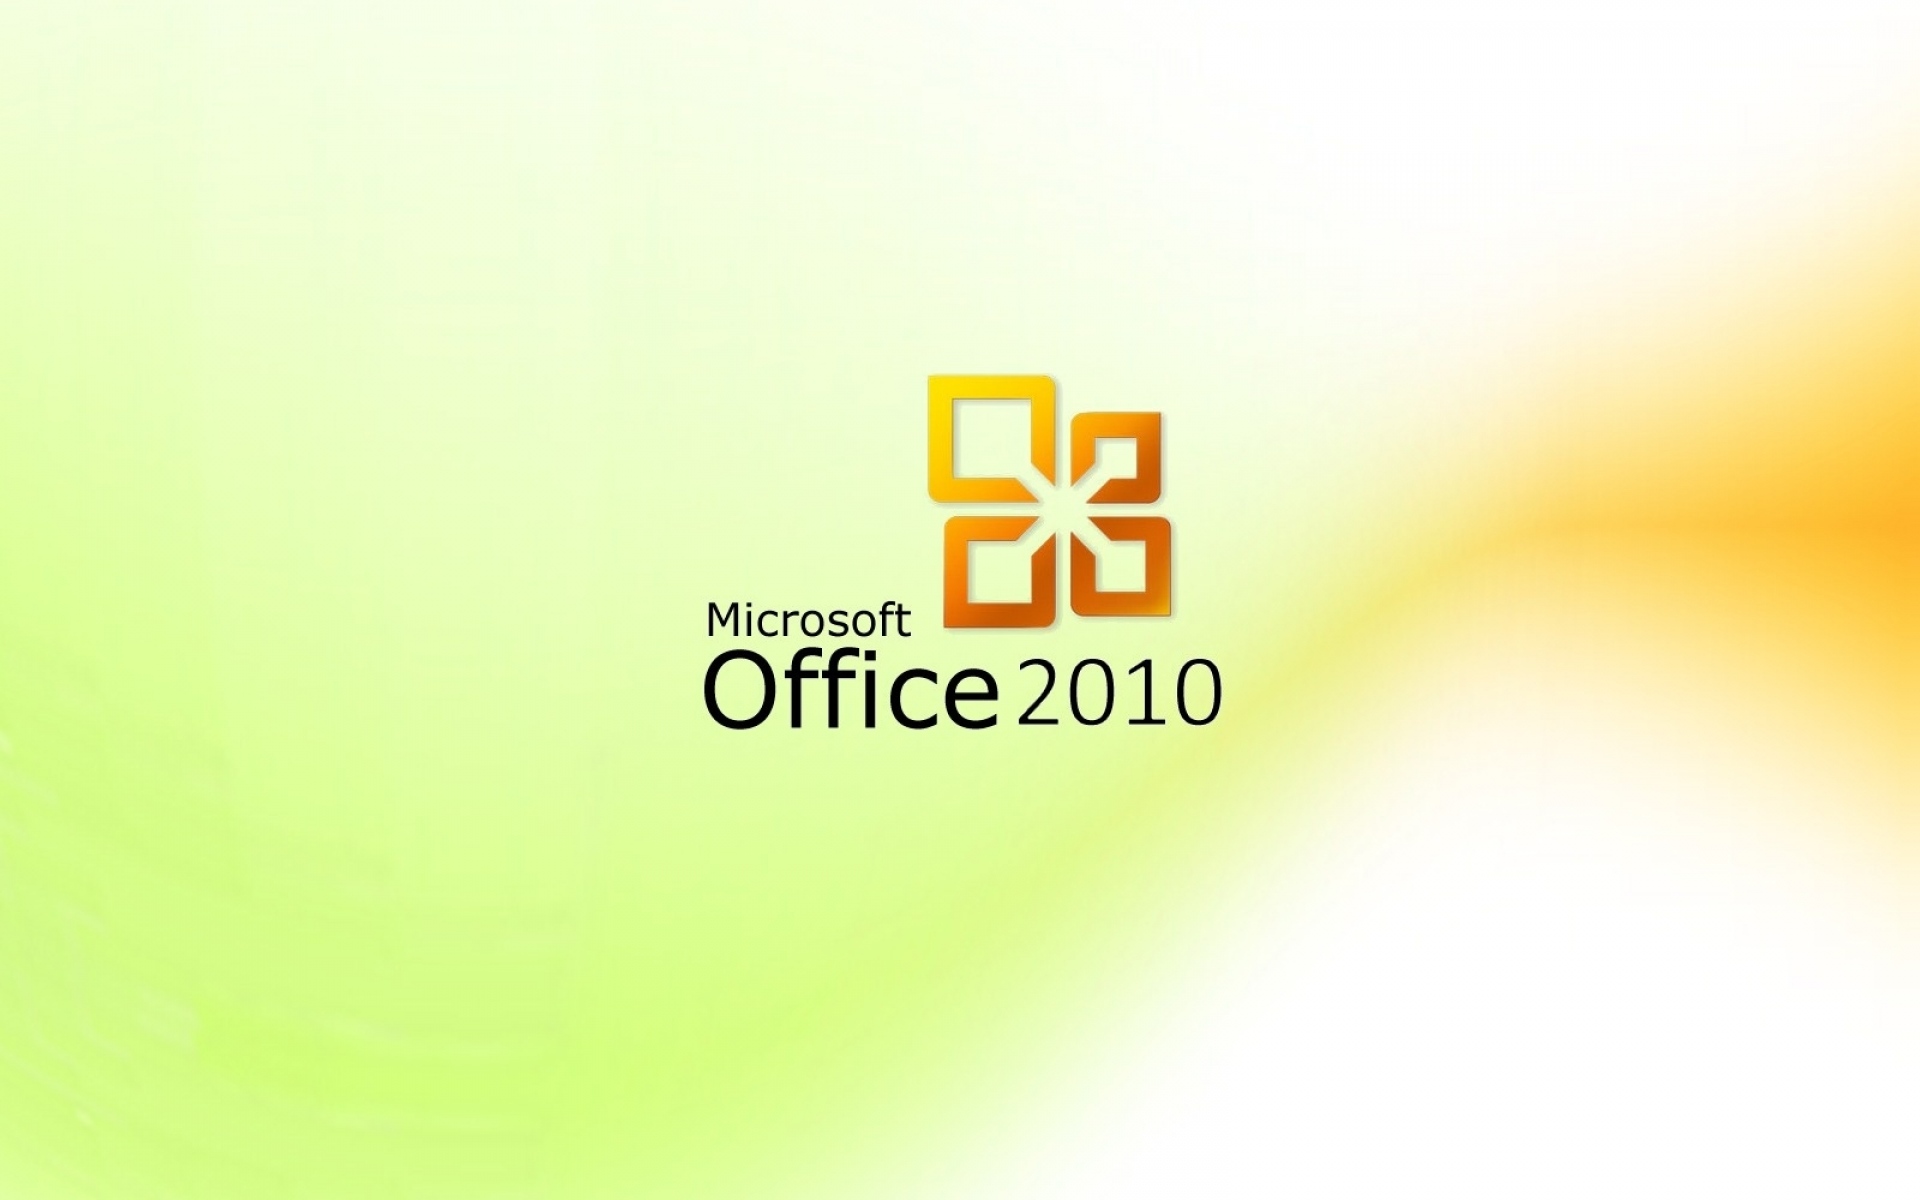 Картинки Microsoft Office 2010, Microsoft, офис, свет, фон фото и обои на рабочий стол